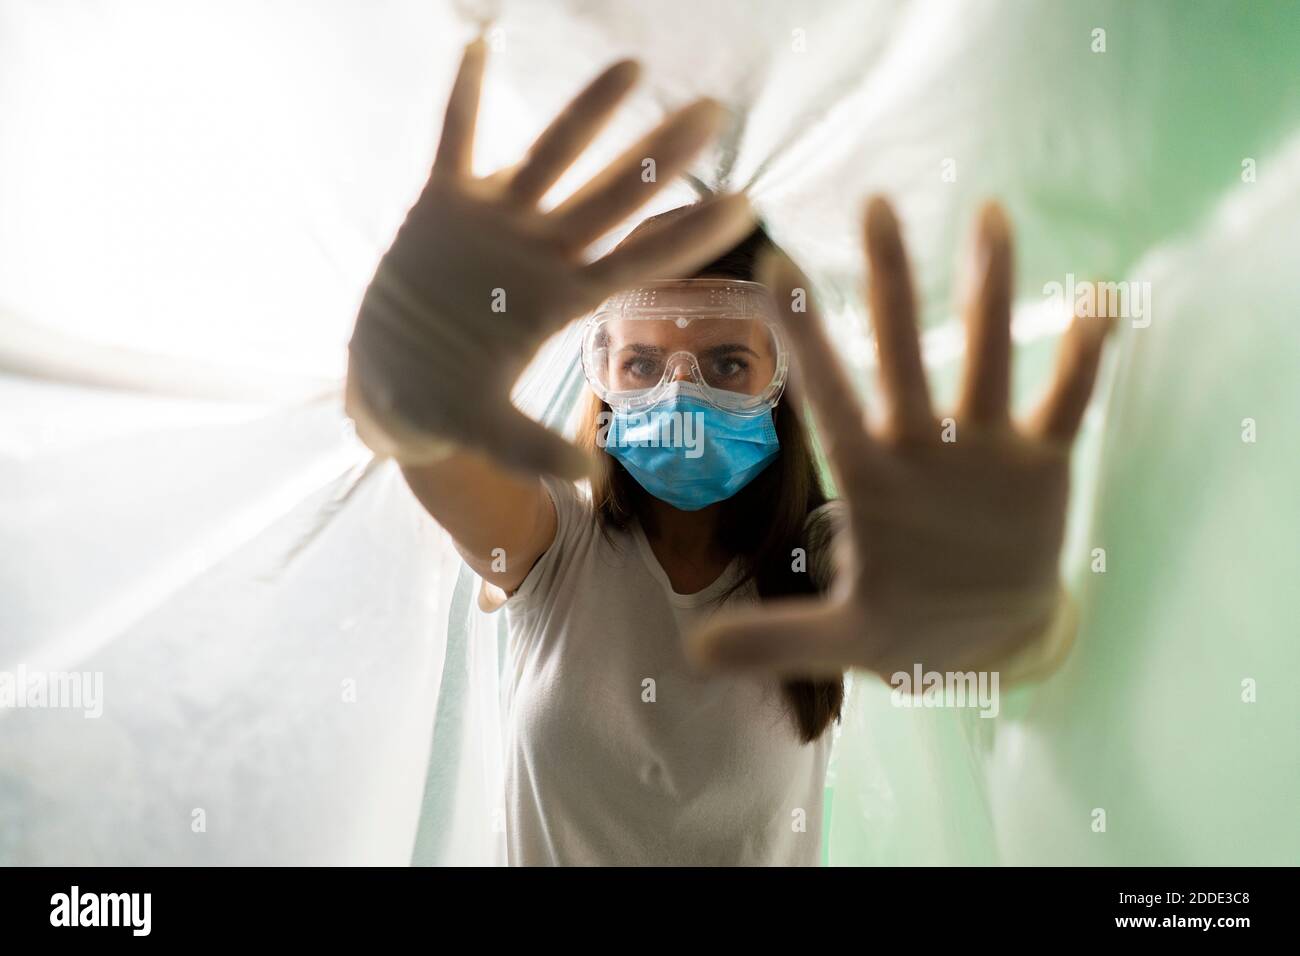 Frau trägt schützende Gesichtsmaske tun Stop-Geste, während bedeckt In Plastik während des COVID-19 Ausbruchs Stockfoto